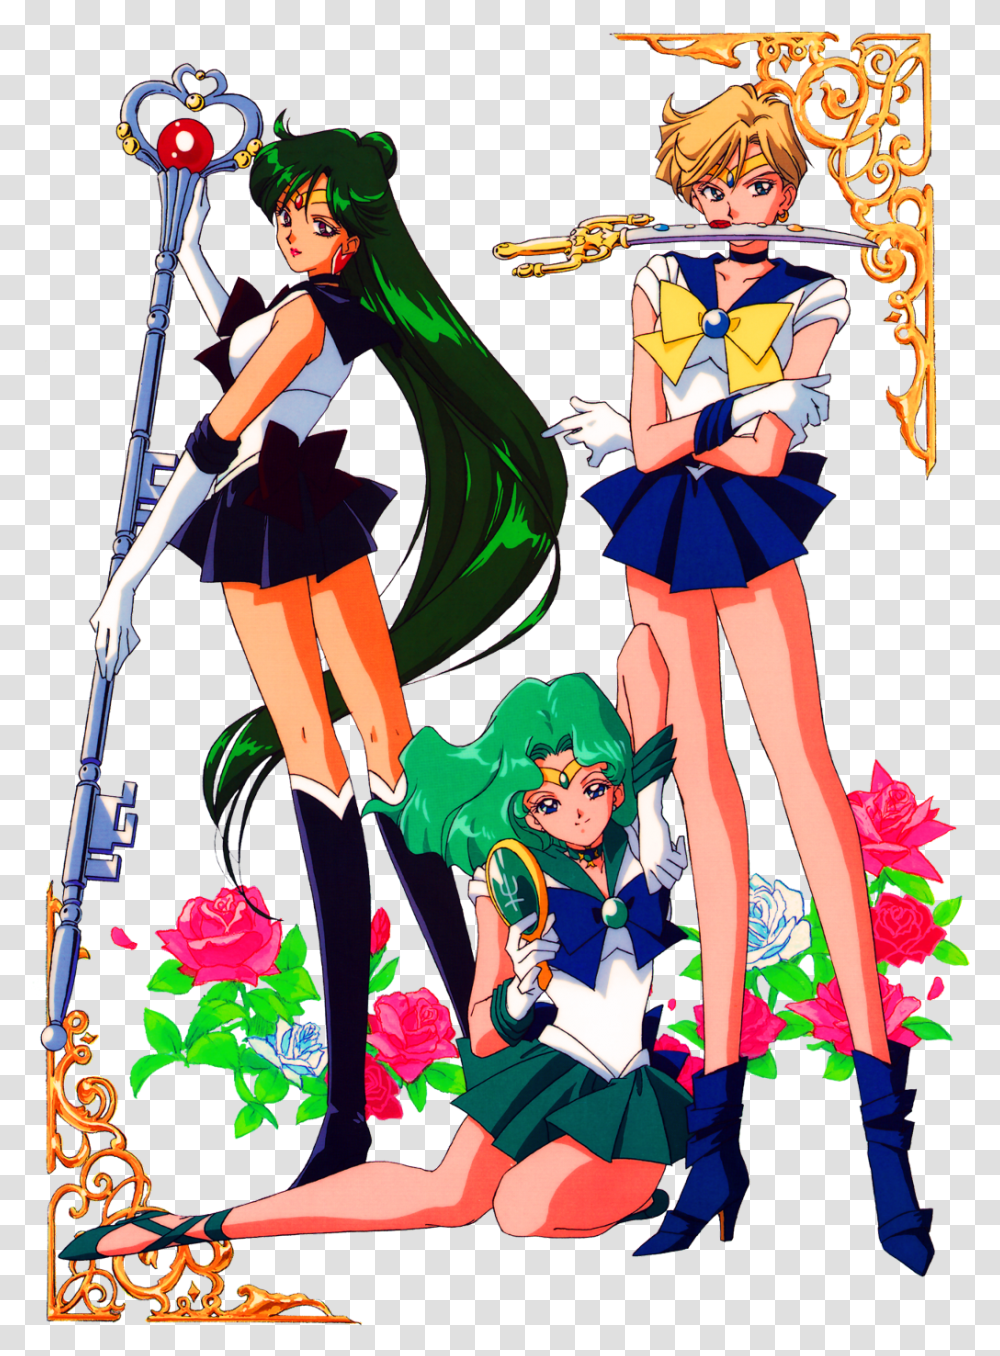 Sailormoon Sailorneptune Sailoruranus Sailorpluto Anime Sailor Moon Sailor Uranus, Comics, Book, Person, Human Transparent Png